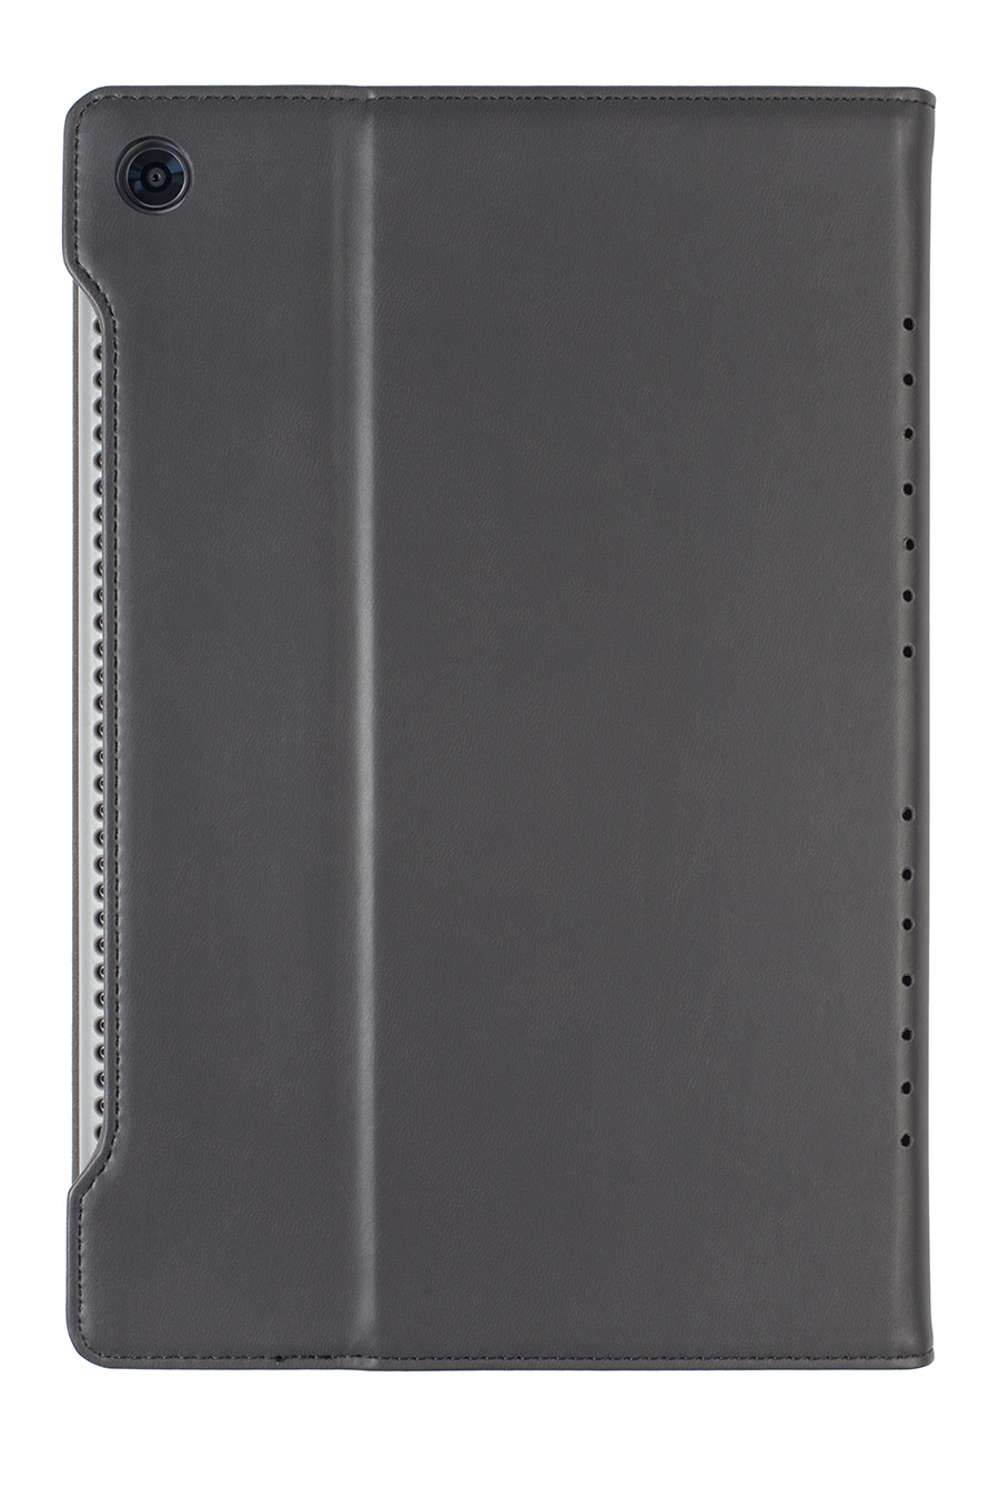 Gecko Covers EasyClick Hoes - Geschikt voor Huawei MediaPad M5 (Pro) 2018 - 10.8 inch - Zwart